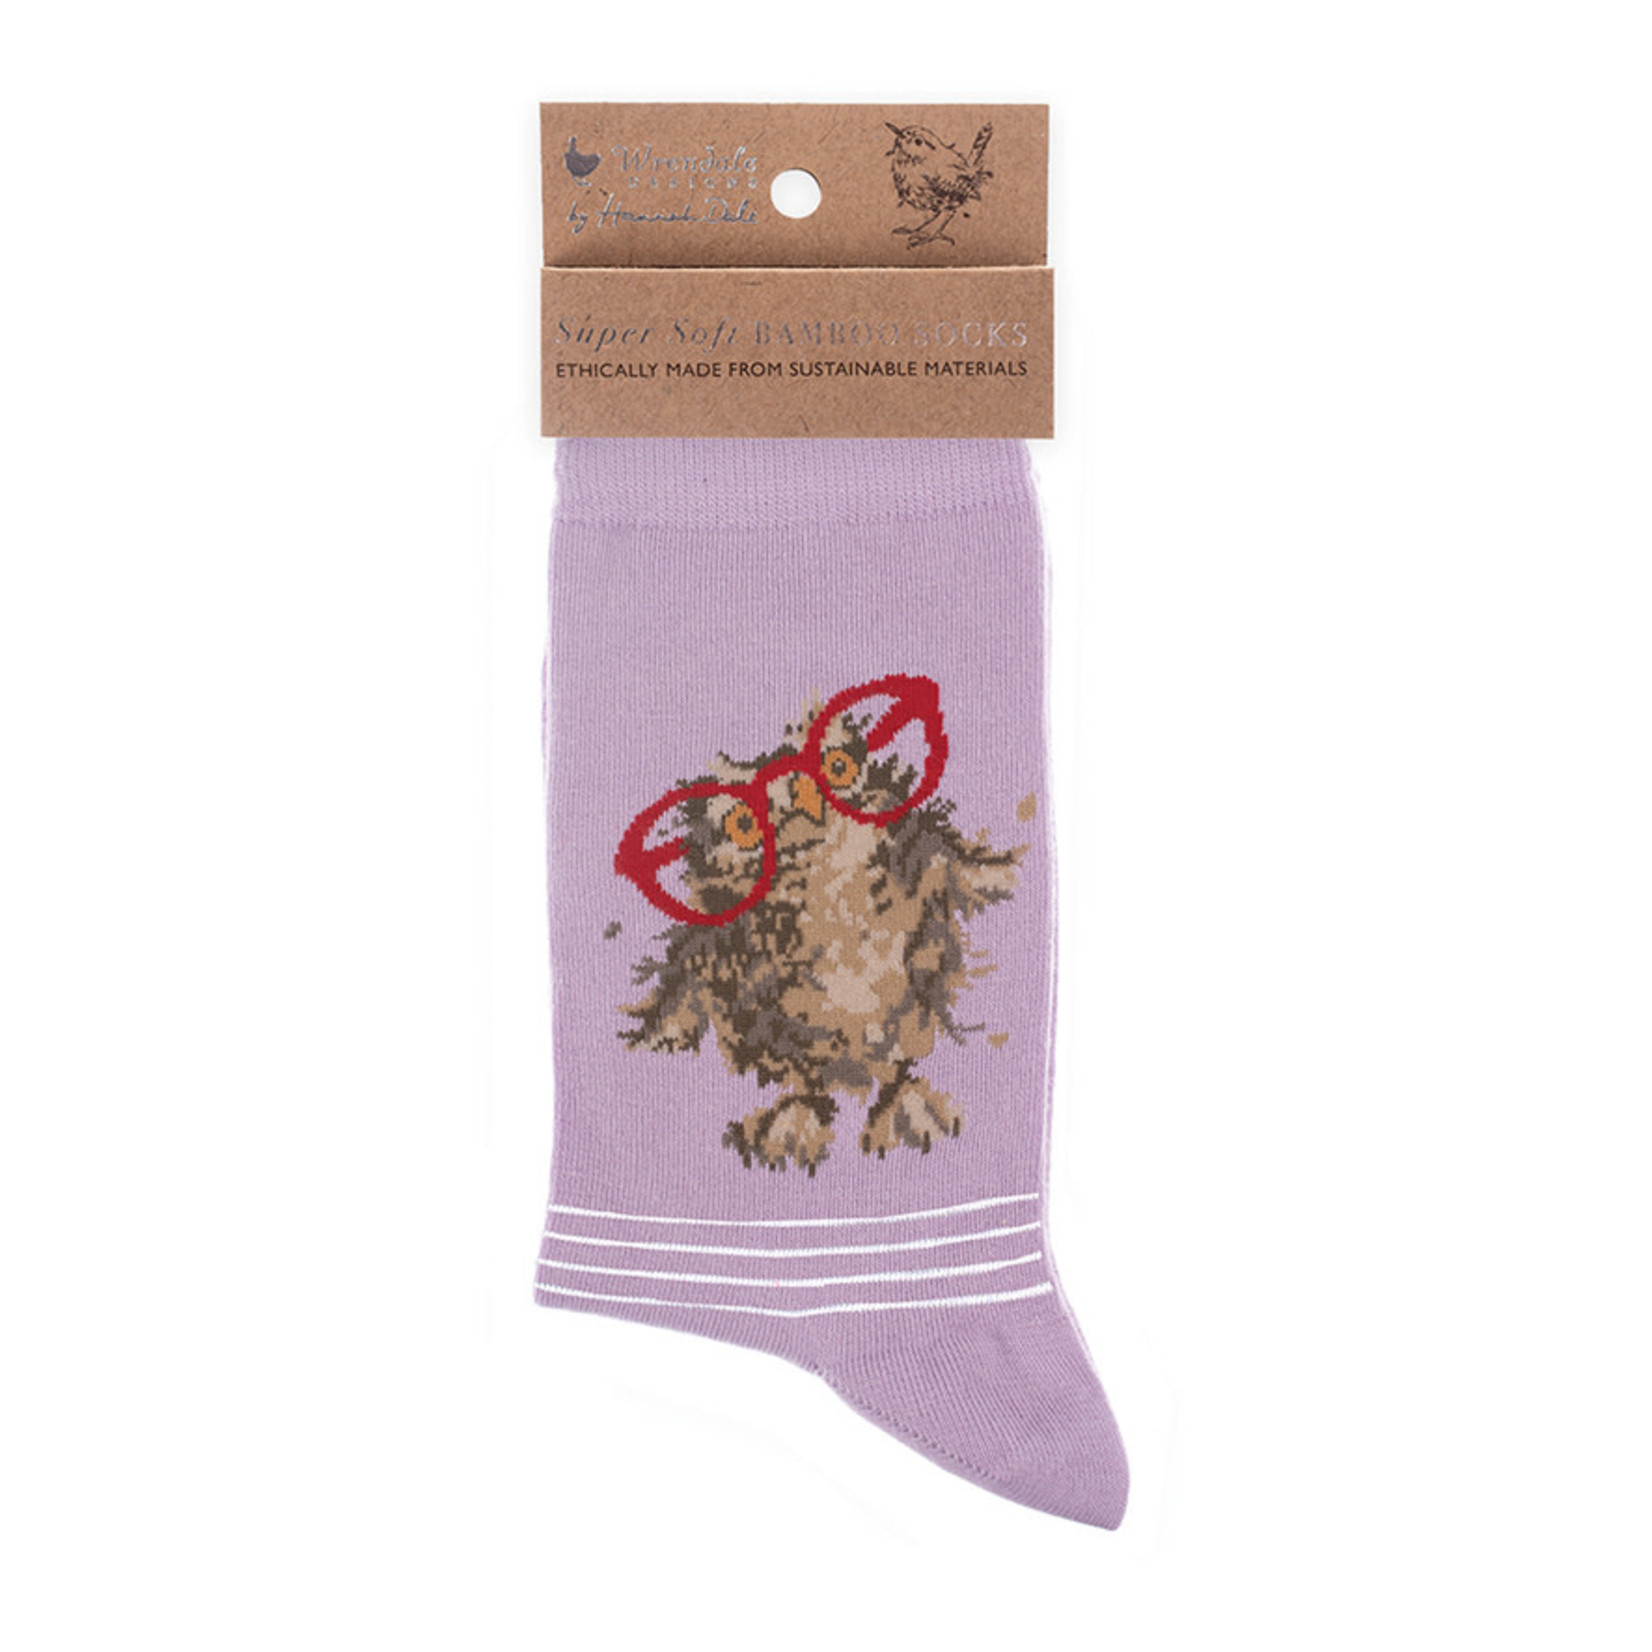 Wrendale Designs Socks - 'Spectacular' Owl (SOCK004)